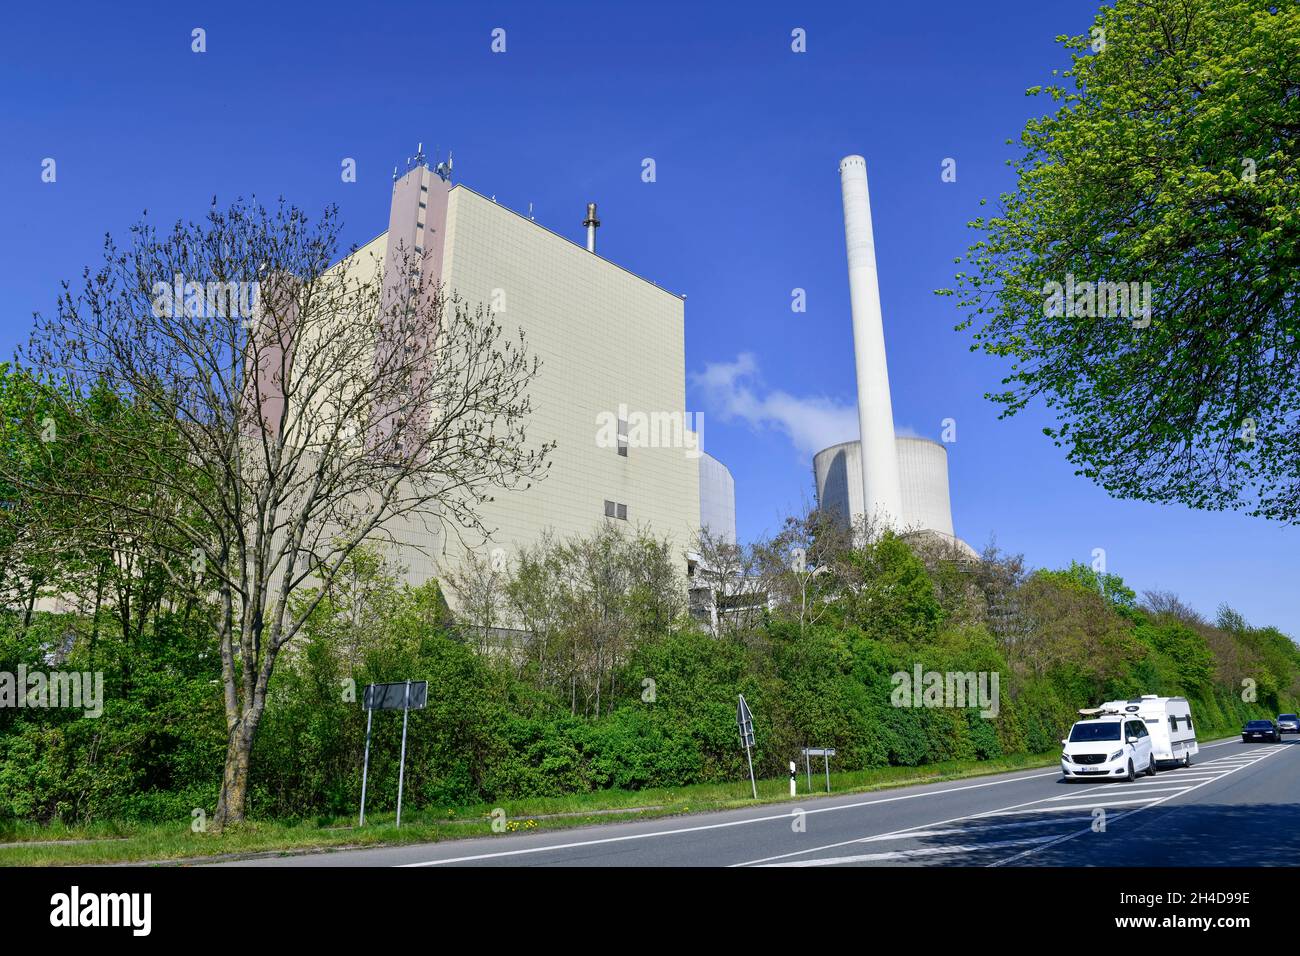 Kraftwerk Heyden, Lahde, Petershagen, Kreis Minden-Lübbecke, Nordrhein-Westfalen, Deutschland Foto de stock